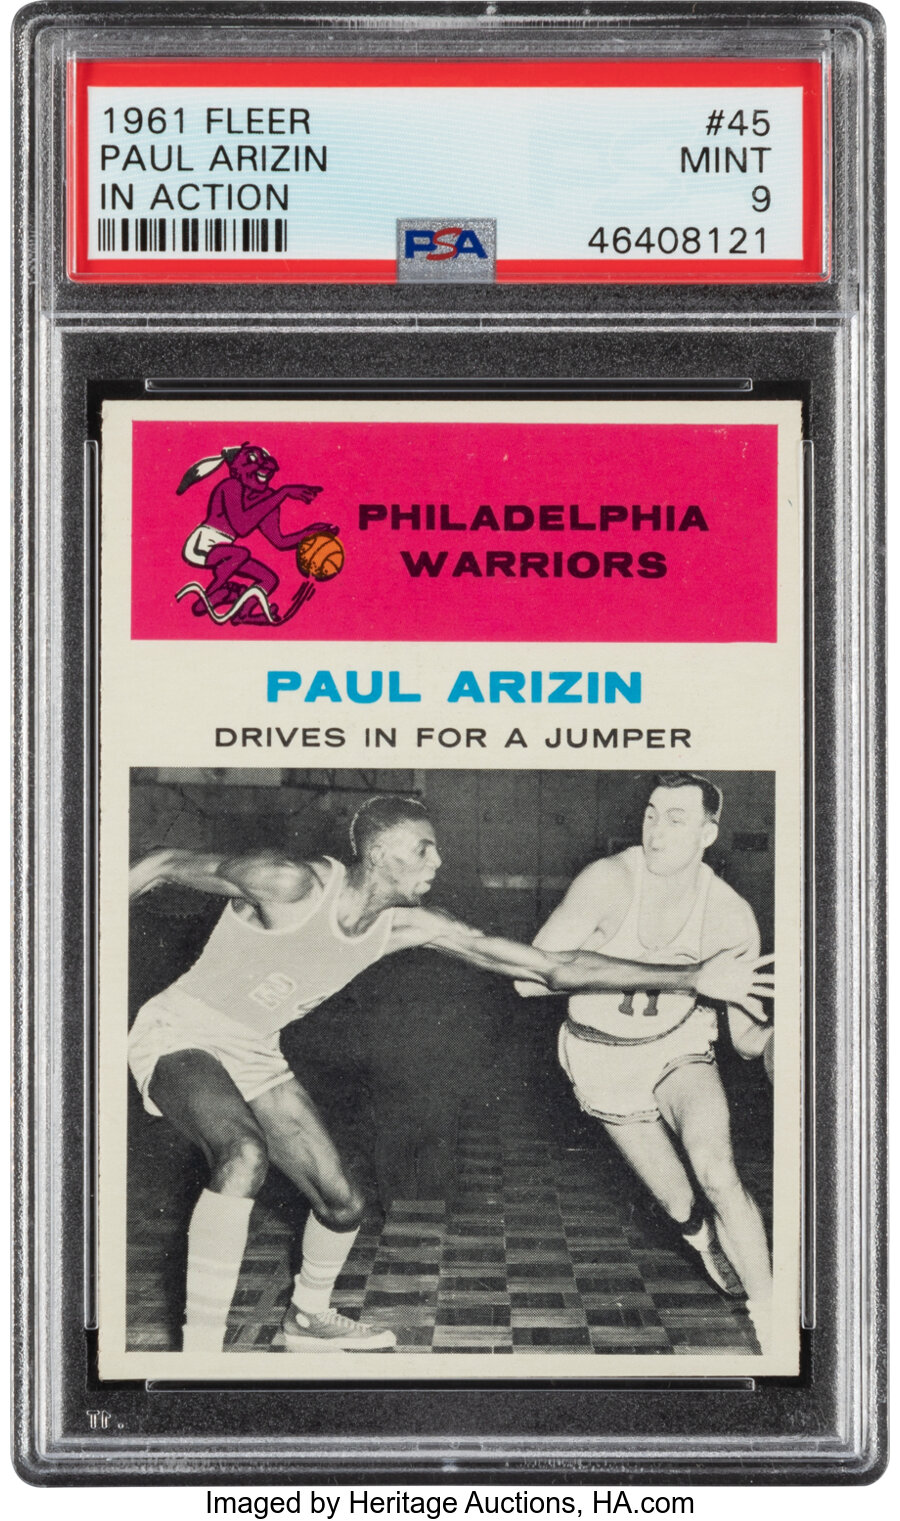 1961 Fleer Paul Arizin (In Action) #45 PSA Mint 9 - None Higher!